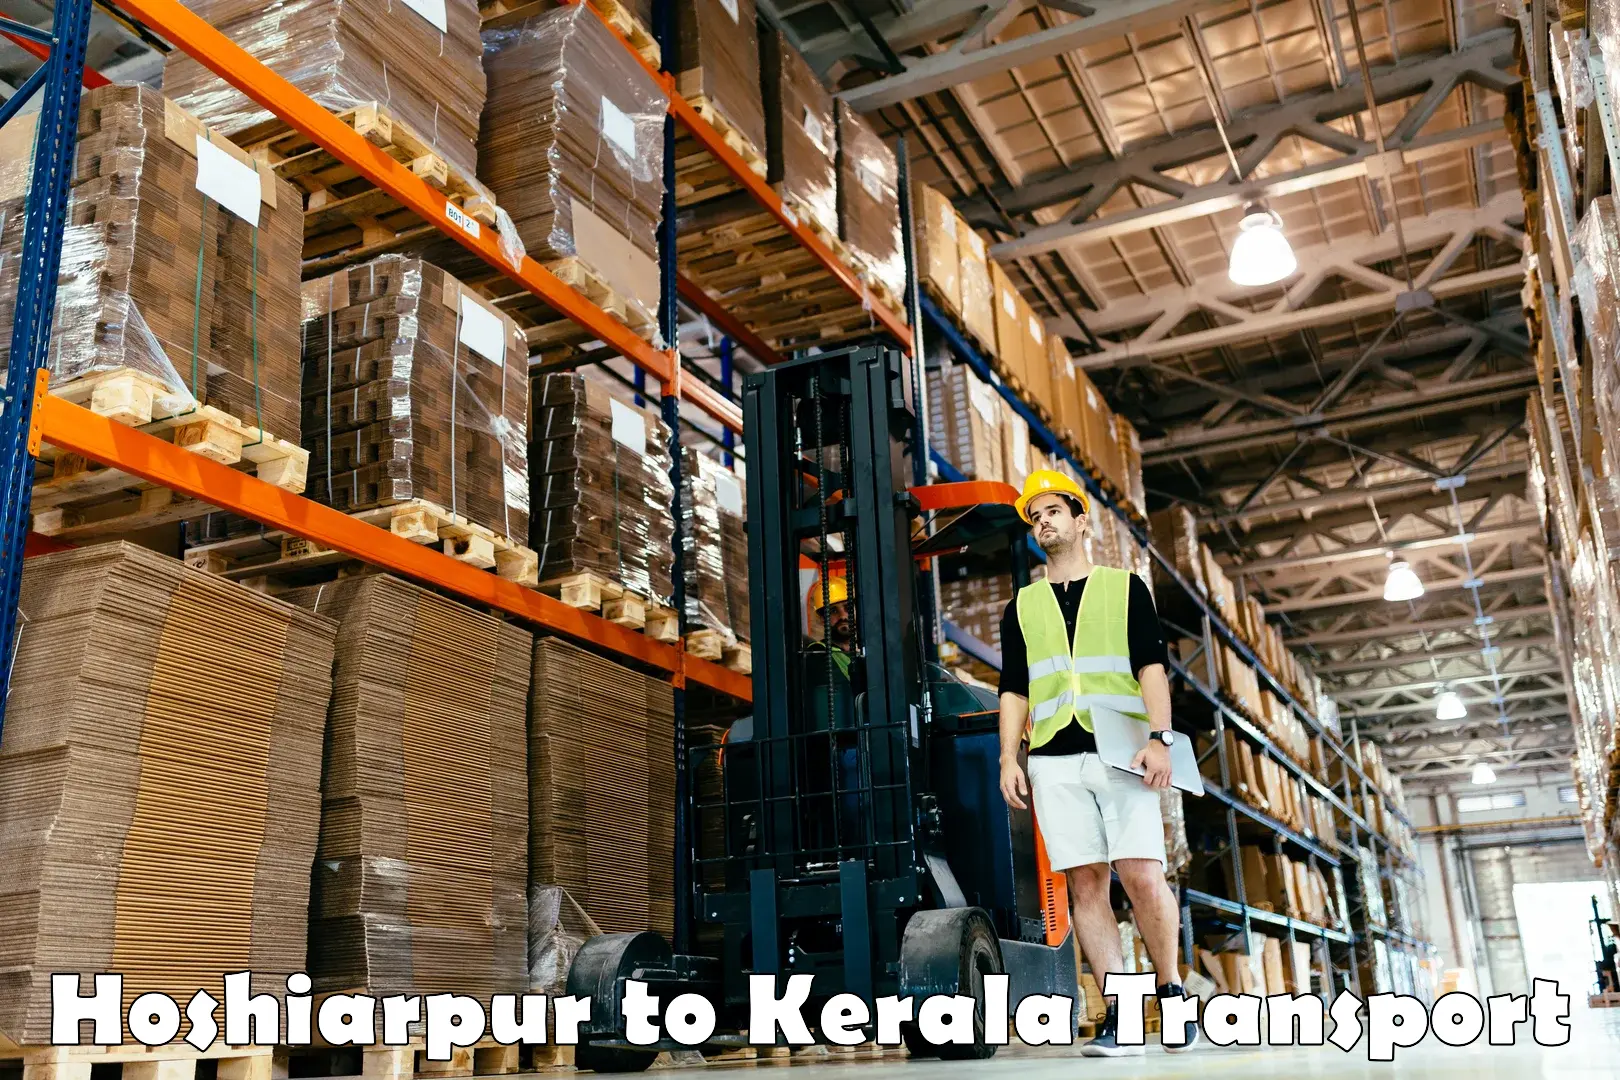 Commercial transport service Hoshiarpur to Kerala